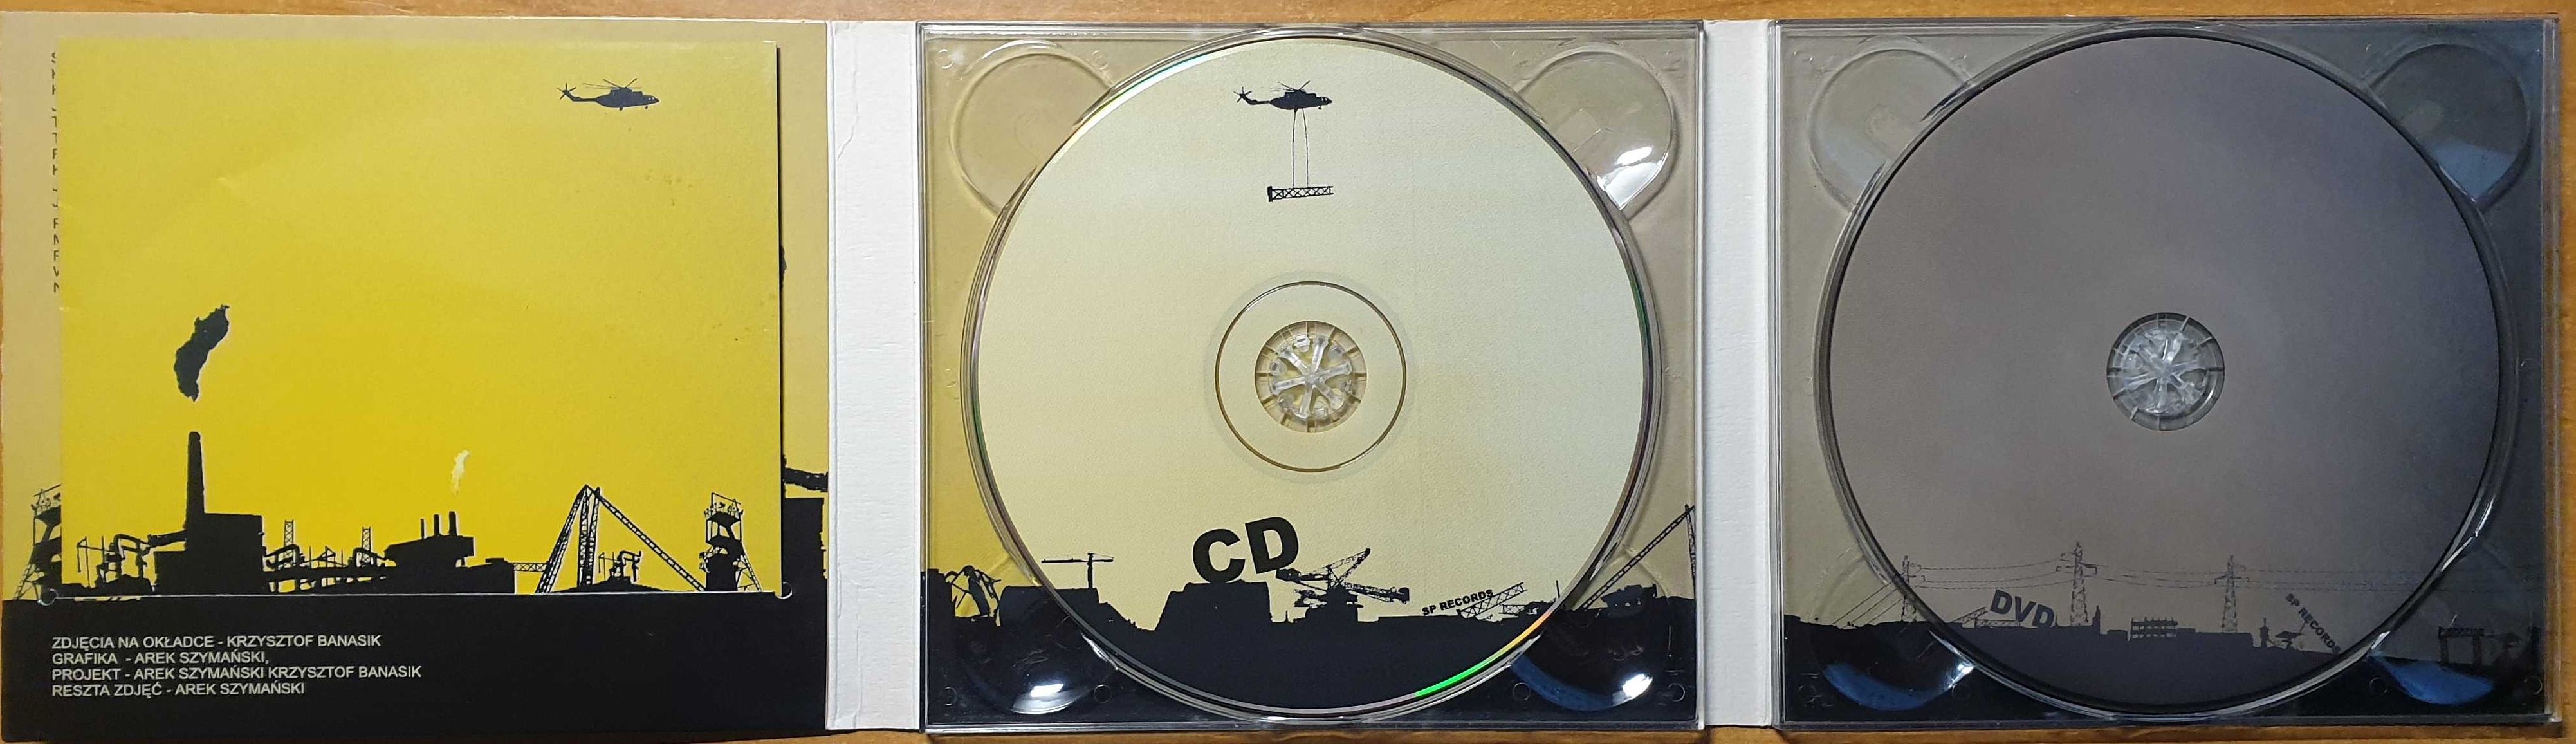 KULT Poligono industrial audio CD + DVD z teledyskami! 1-sze wydanie